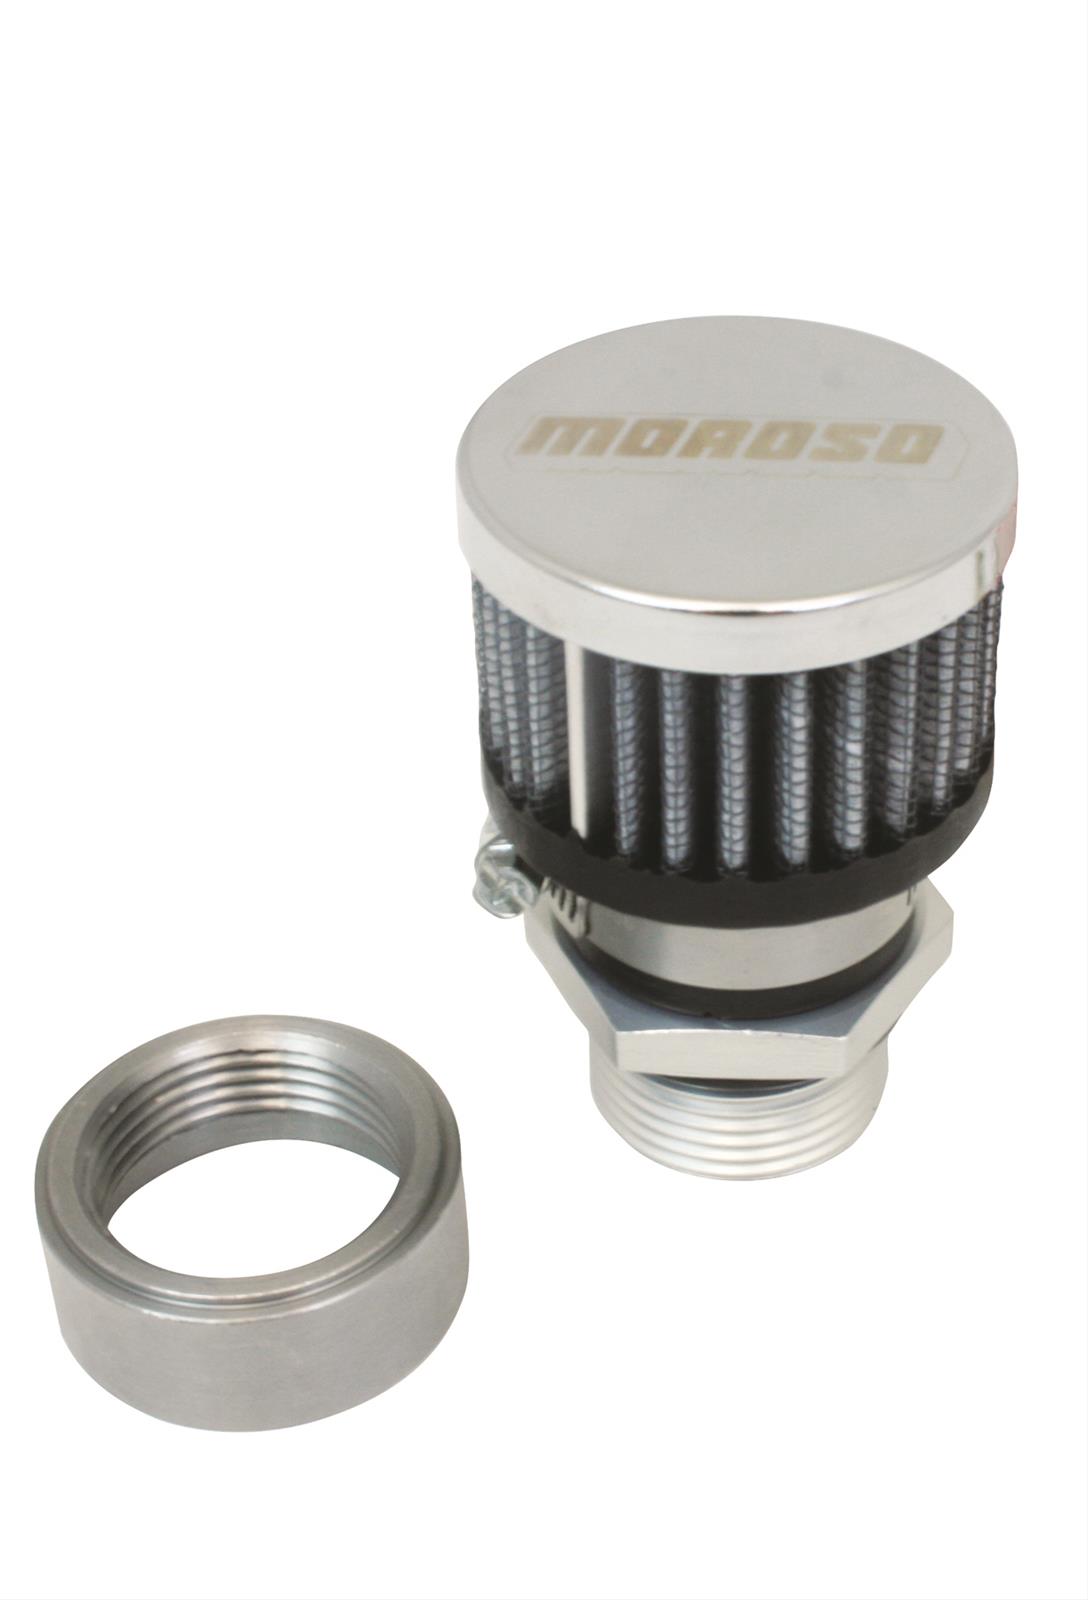 Moroso 68849 V/C Breather Kit, Steel, U-Weld, Chrome Breather